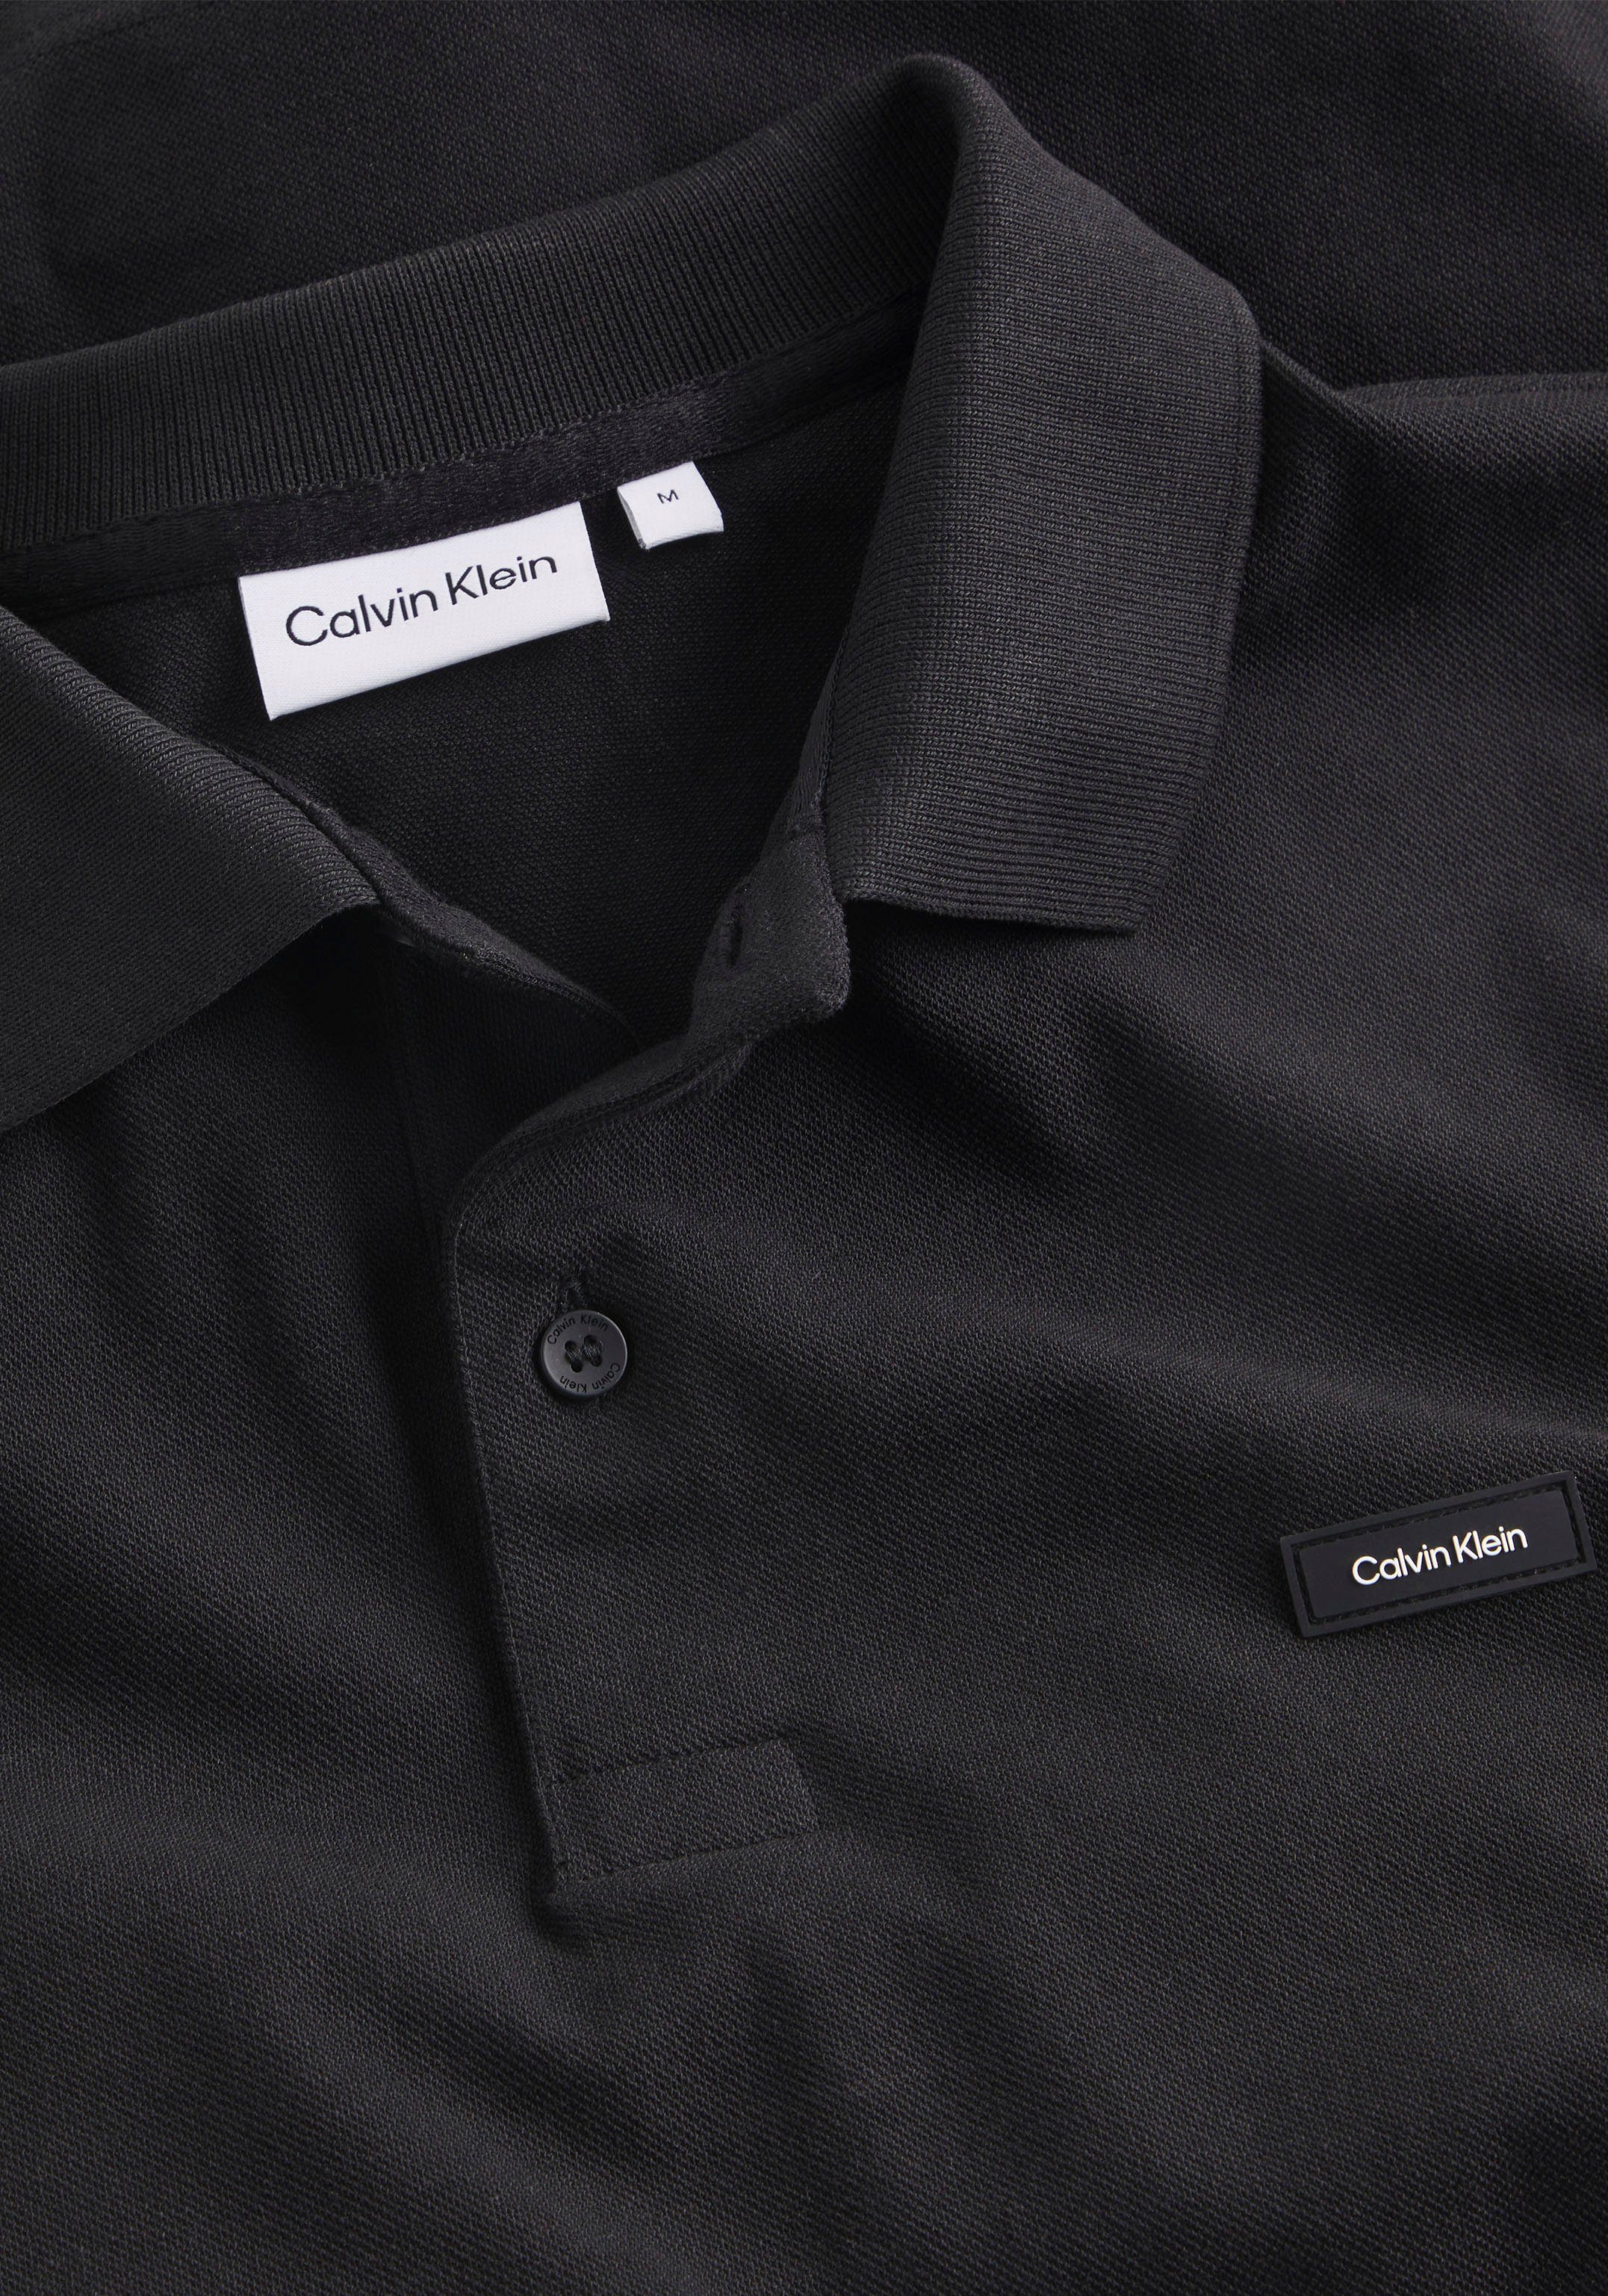 der Brust Klein Calvin Calvin Logo Klein Poloshirt mit schwarz auf